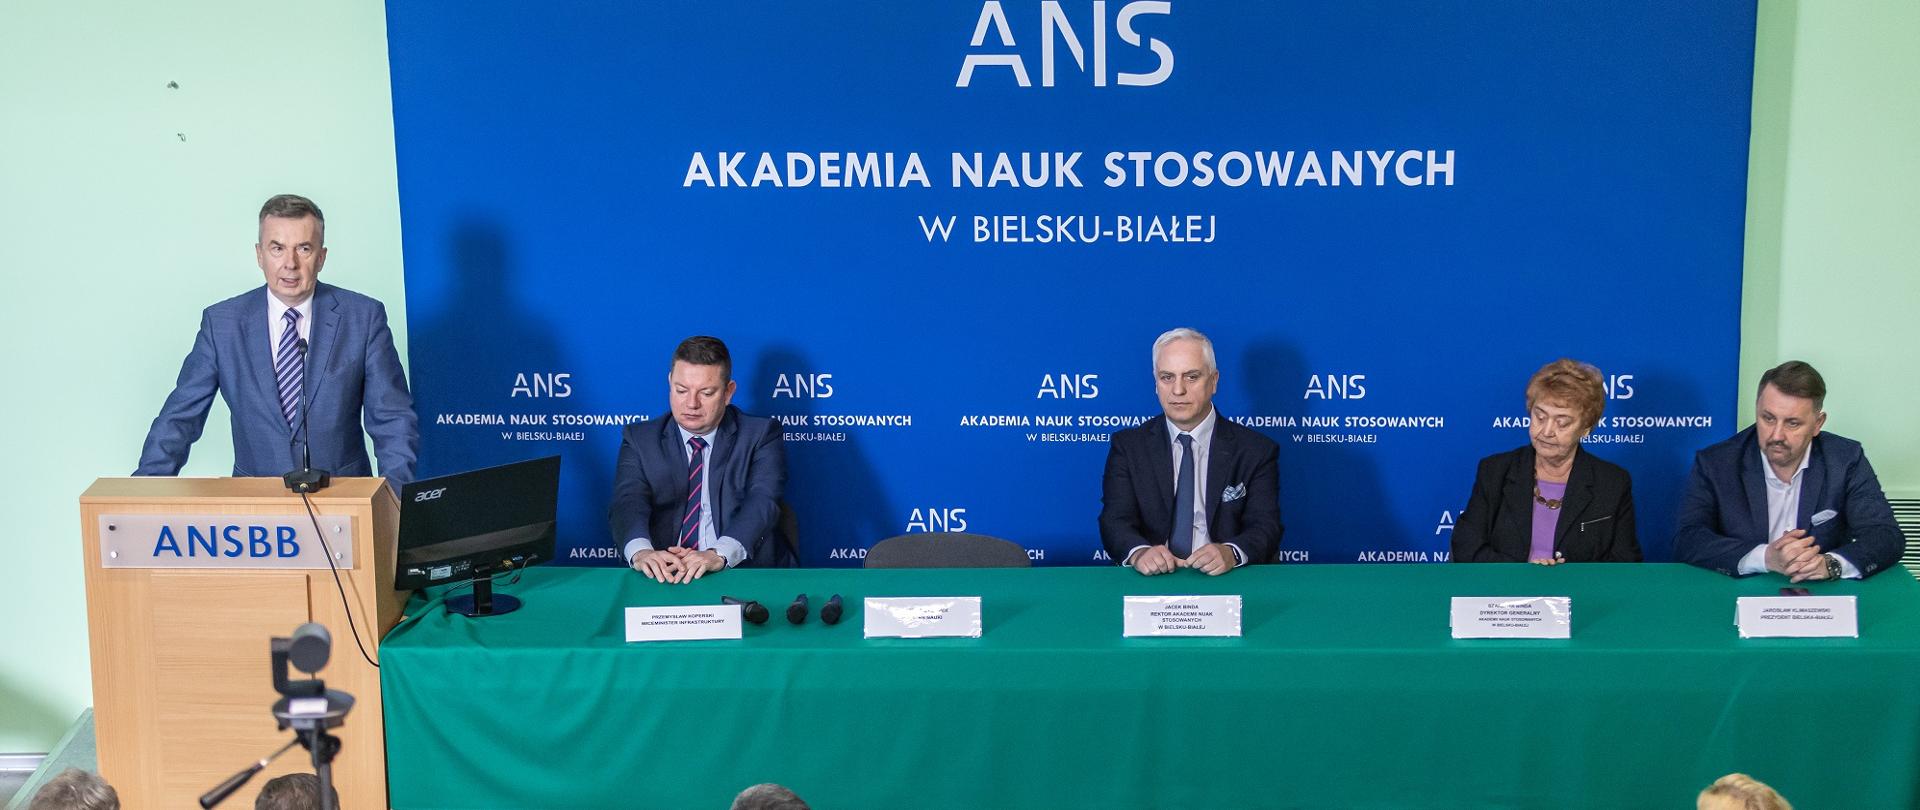 Minister Wieczorek stoi za mównicą i mówi do mikrofonu, za nim na niebieskiej ścianie biały napis ANS - Akademia Nauk Stosowanych w Bielsku-Białej, obok ministra za przykrytym zielonym materiałem stołem siedzą cztery osoby.